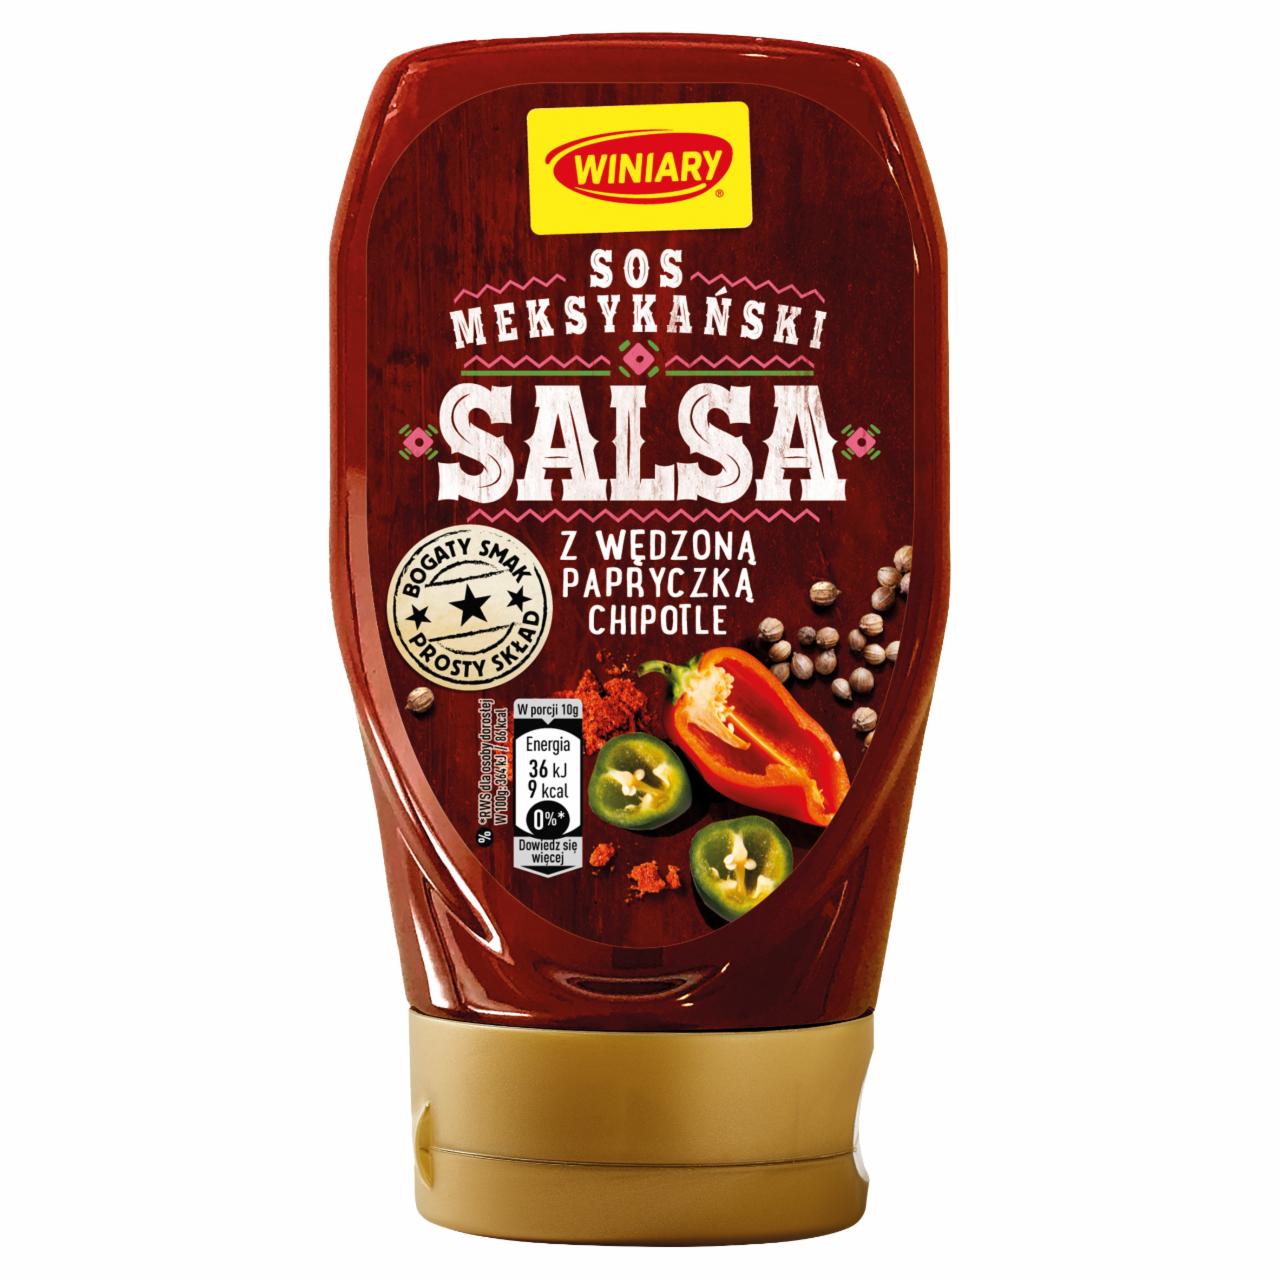 Zdjęcia - Winiary Sos meksykański salsa z wędzoną papryczką chipotle 336 g